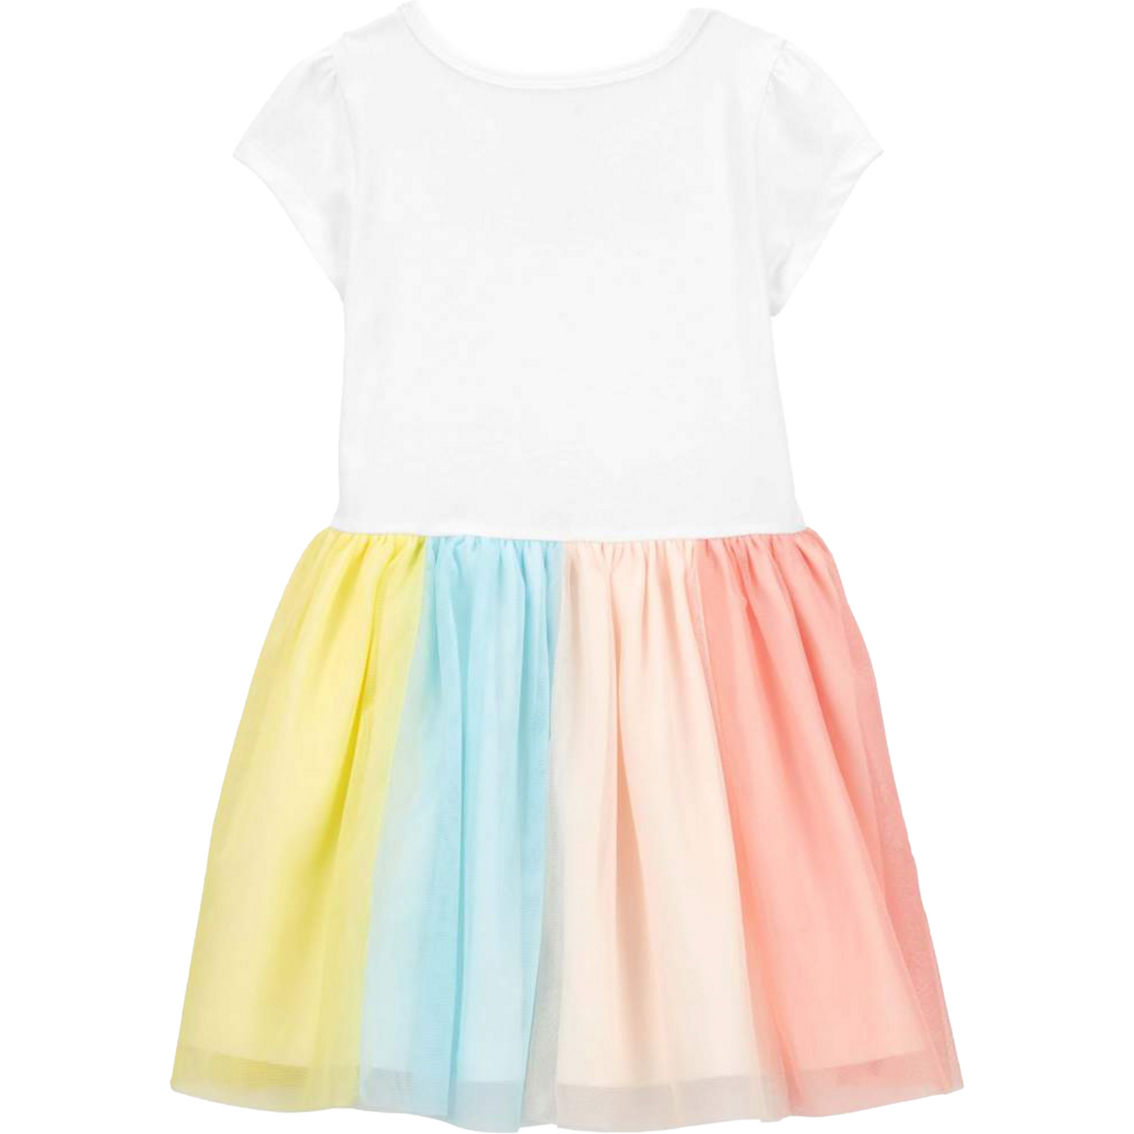 Carter's Toddler Girls Rainbow Tutu Dress - Image 2 of 2